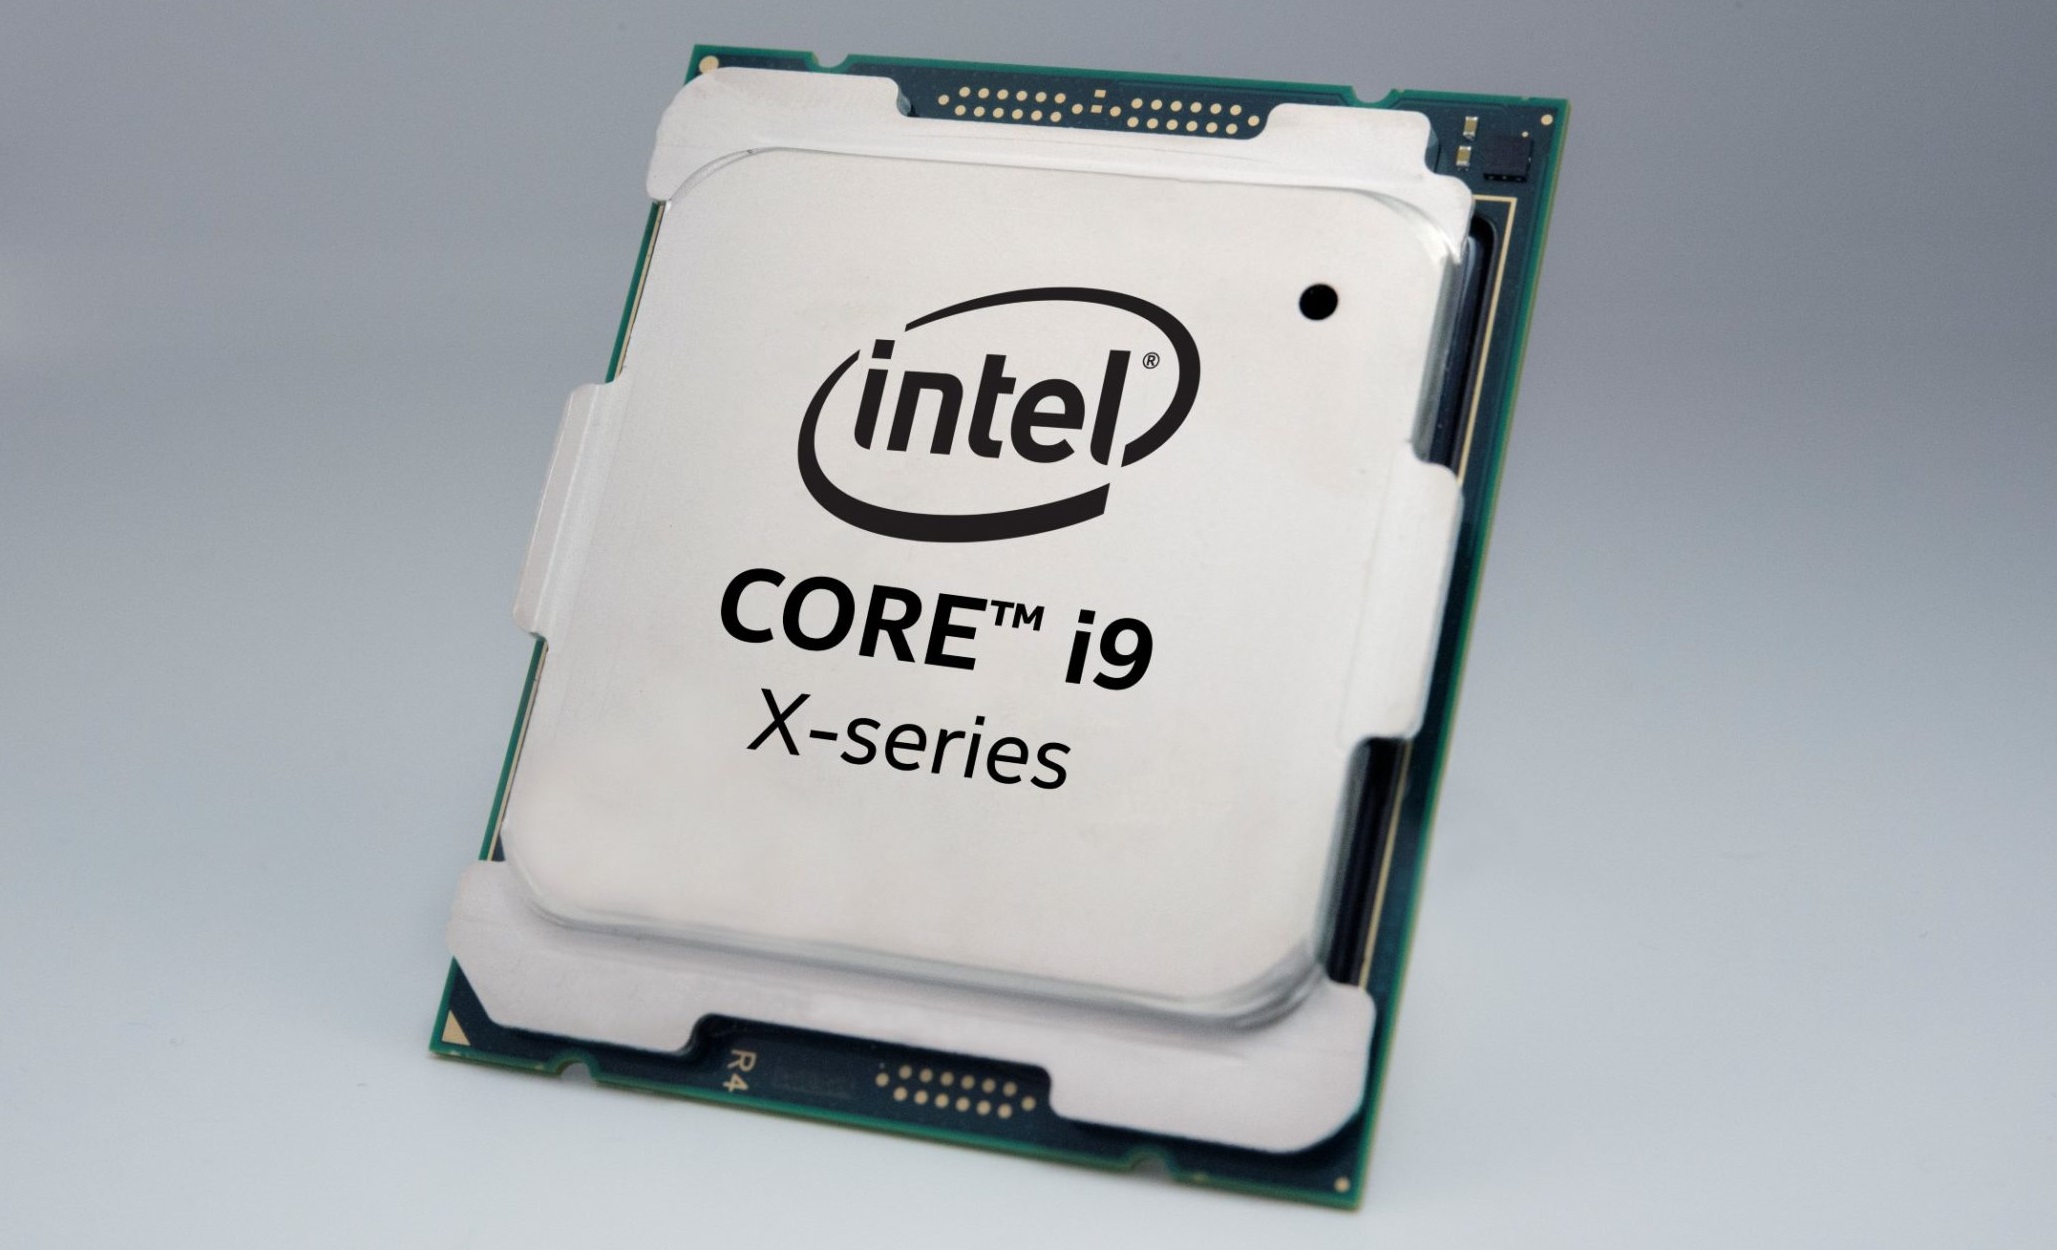 A Intel descontinua todos os seus processadores Core X de 9ª Geração (Skylake-X) e o Xeon W-2000